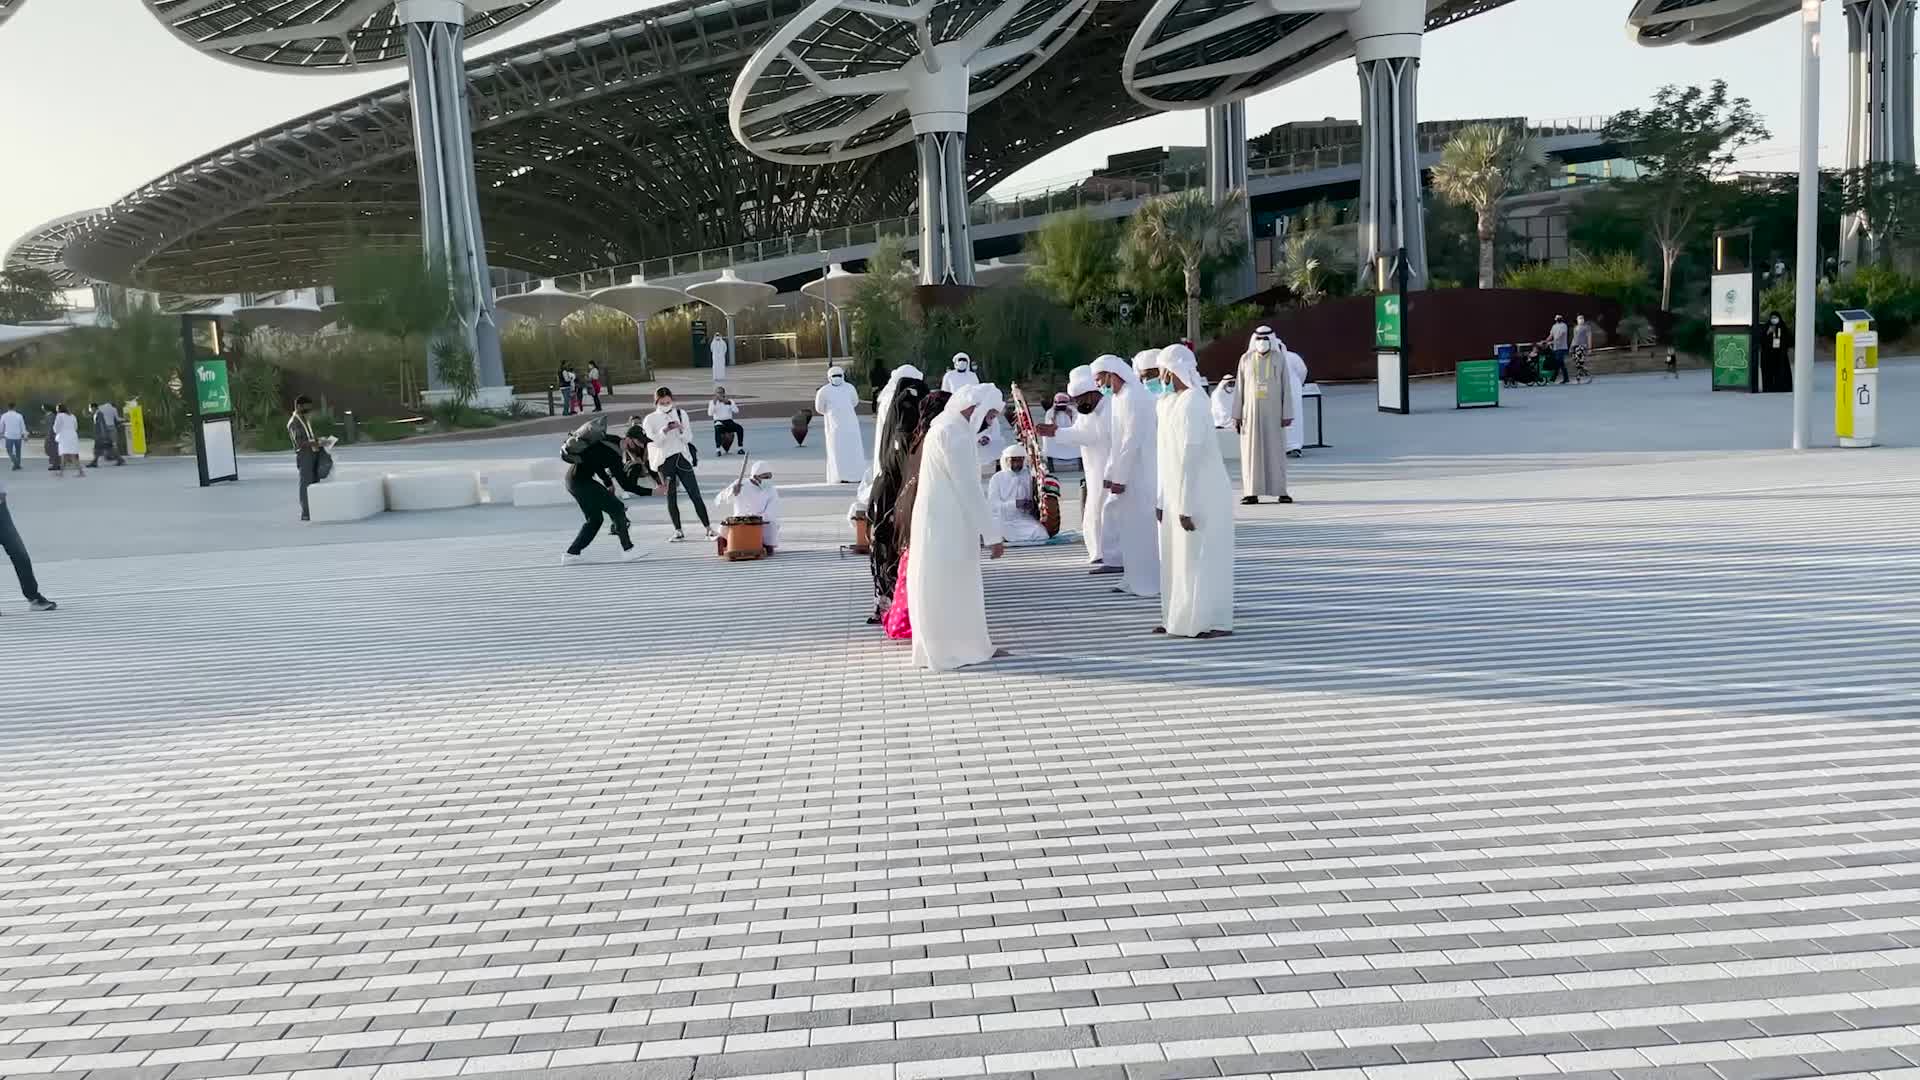 Expo Dubai, come si raggiunge l'area espositiva? Tutte le informazioni